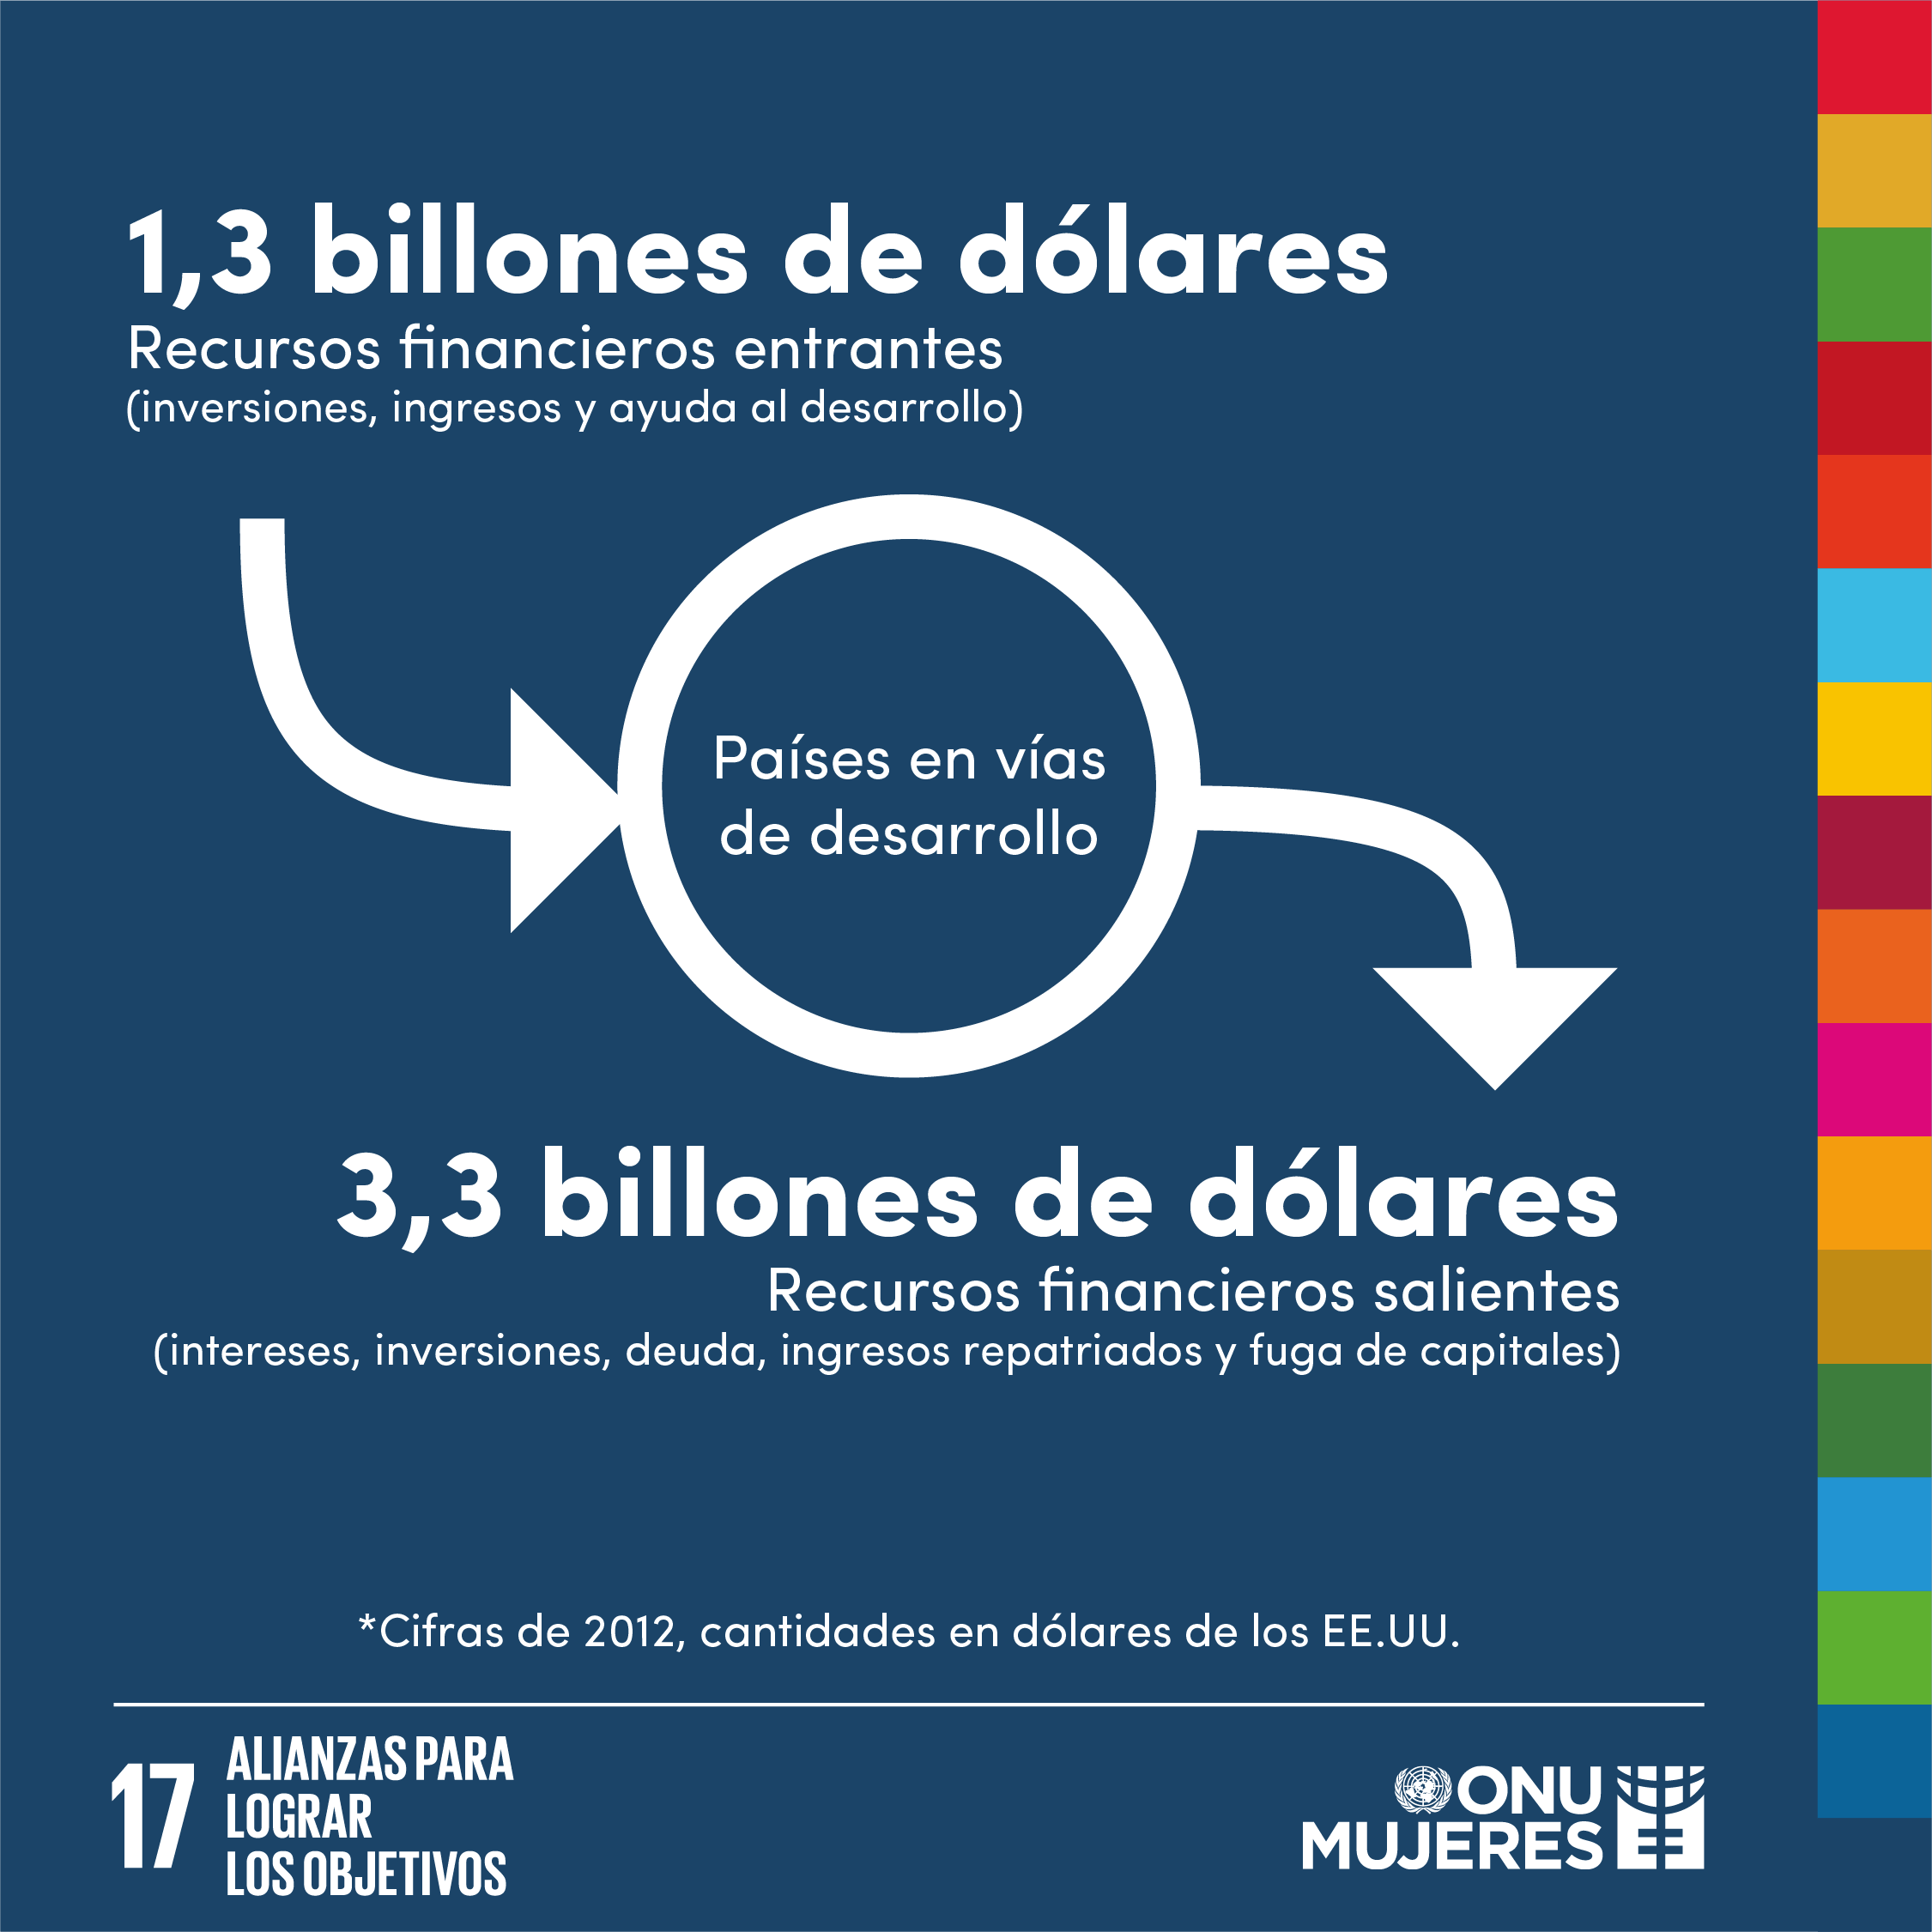 Recursos financieros: 1,3 billones de dólares entran a países en vías de desarrollo, pero 3,3 billones de dólares salen de los mismos (cifras de 2012).